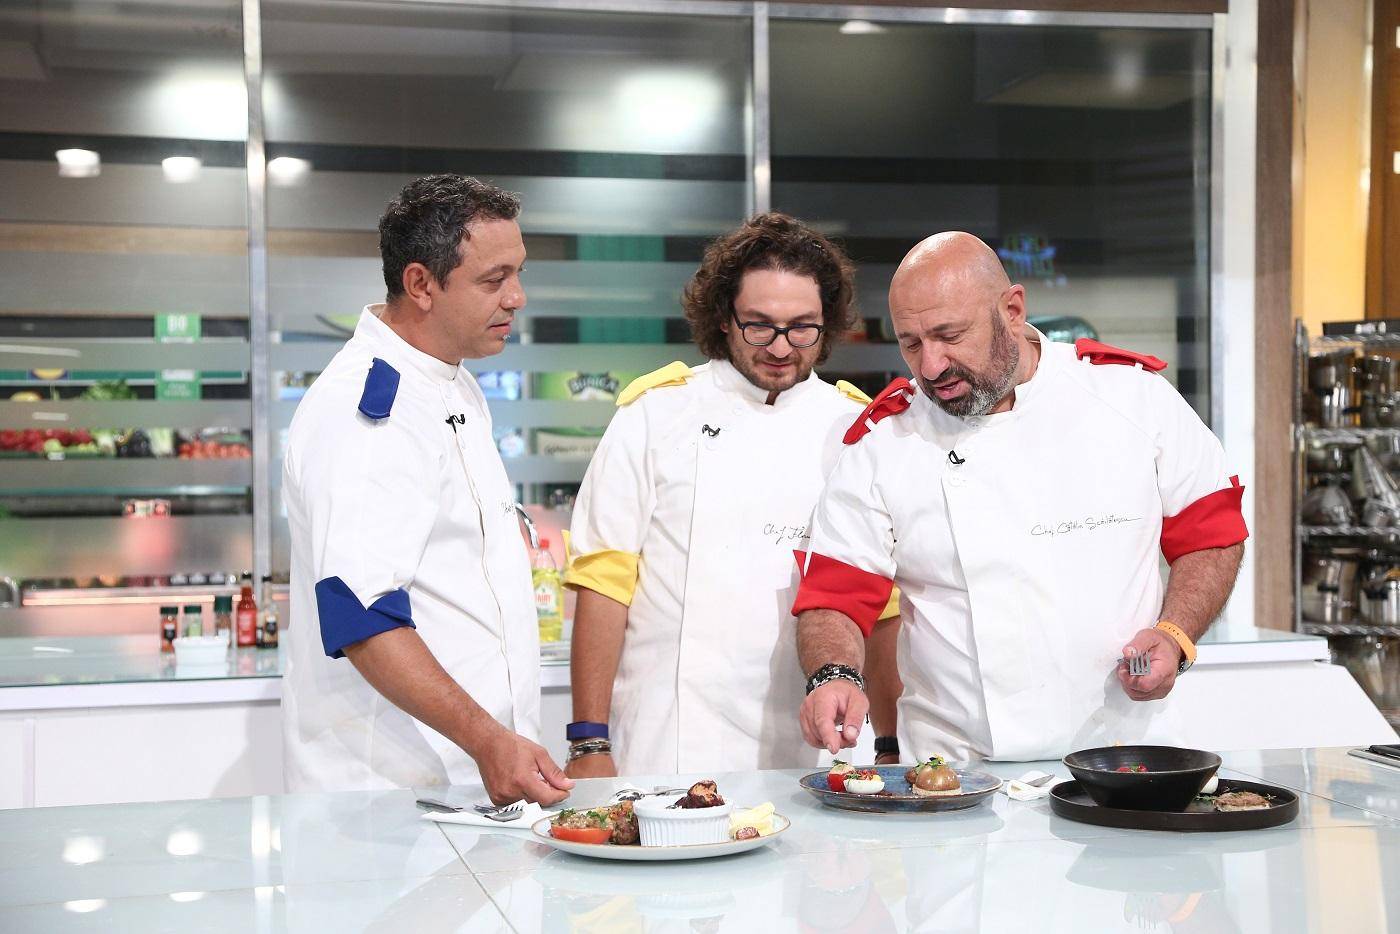 Care este miza pentru care cei 3 chefi bucătari se luptă în ediția specială „Chefi la cuțite” - pe 29, 30 și 1 Decembrie